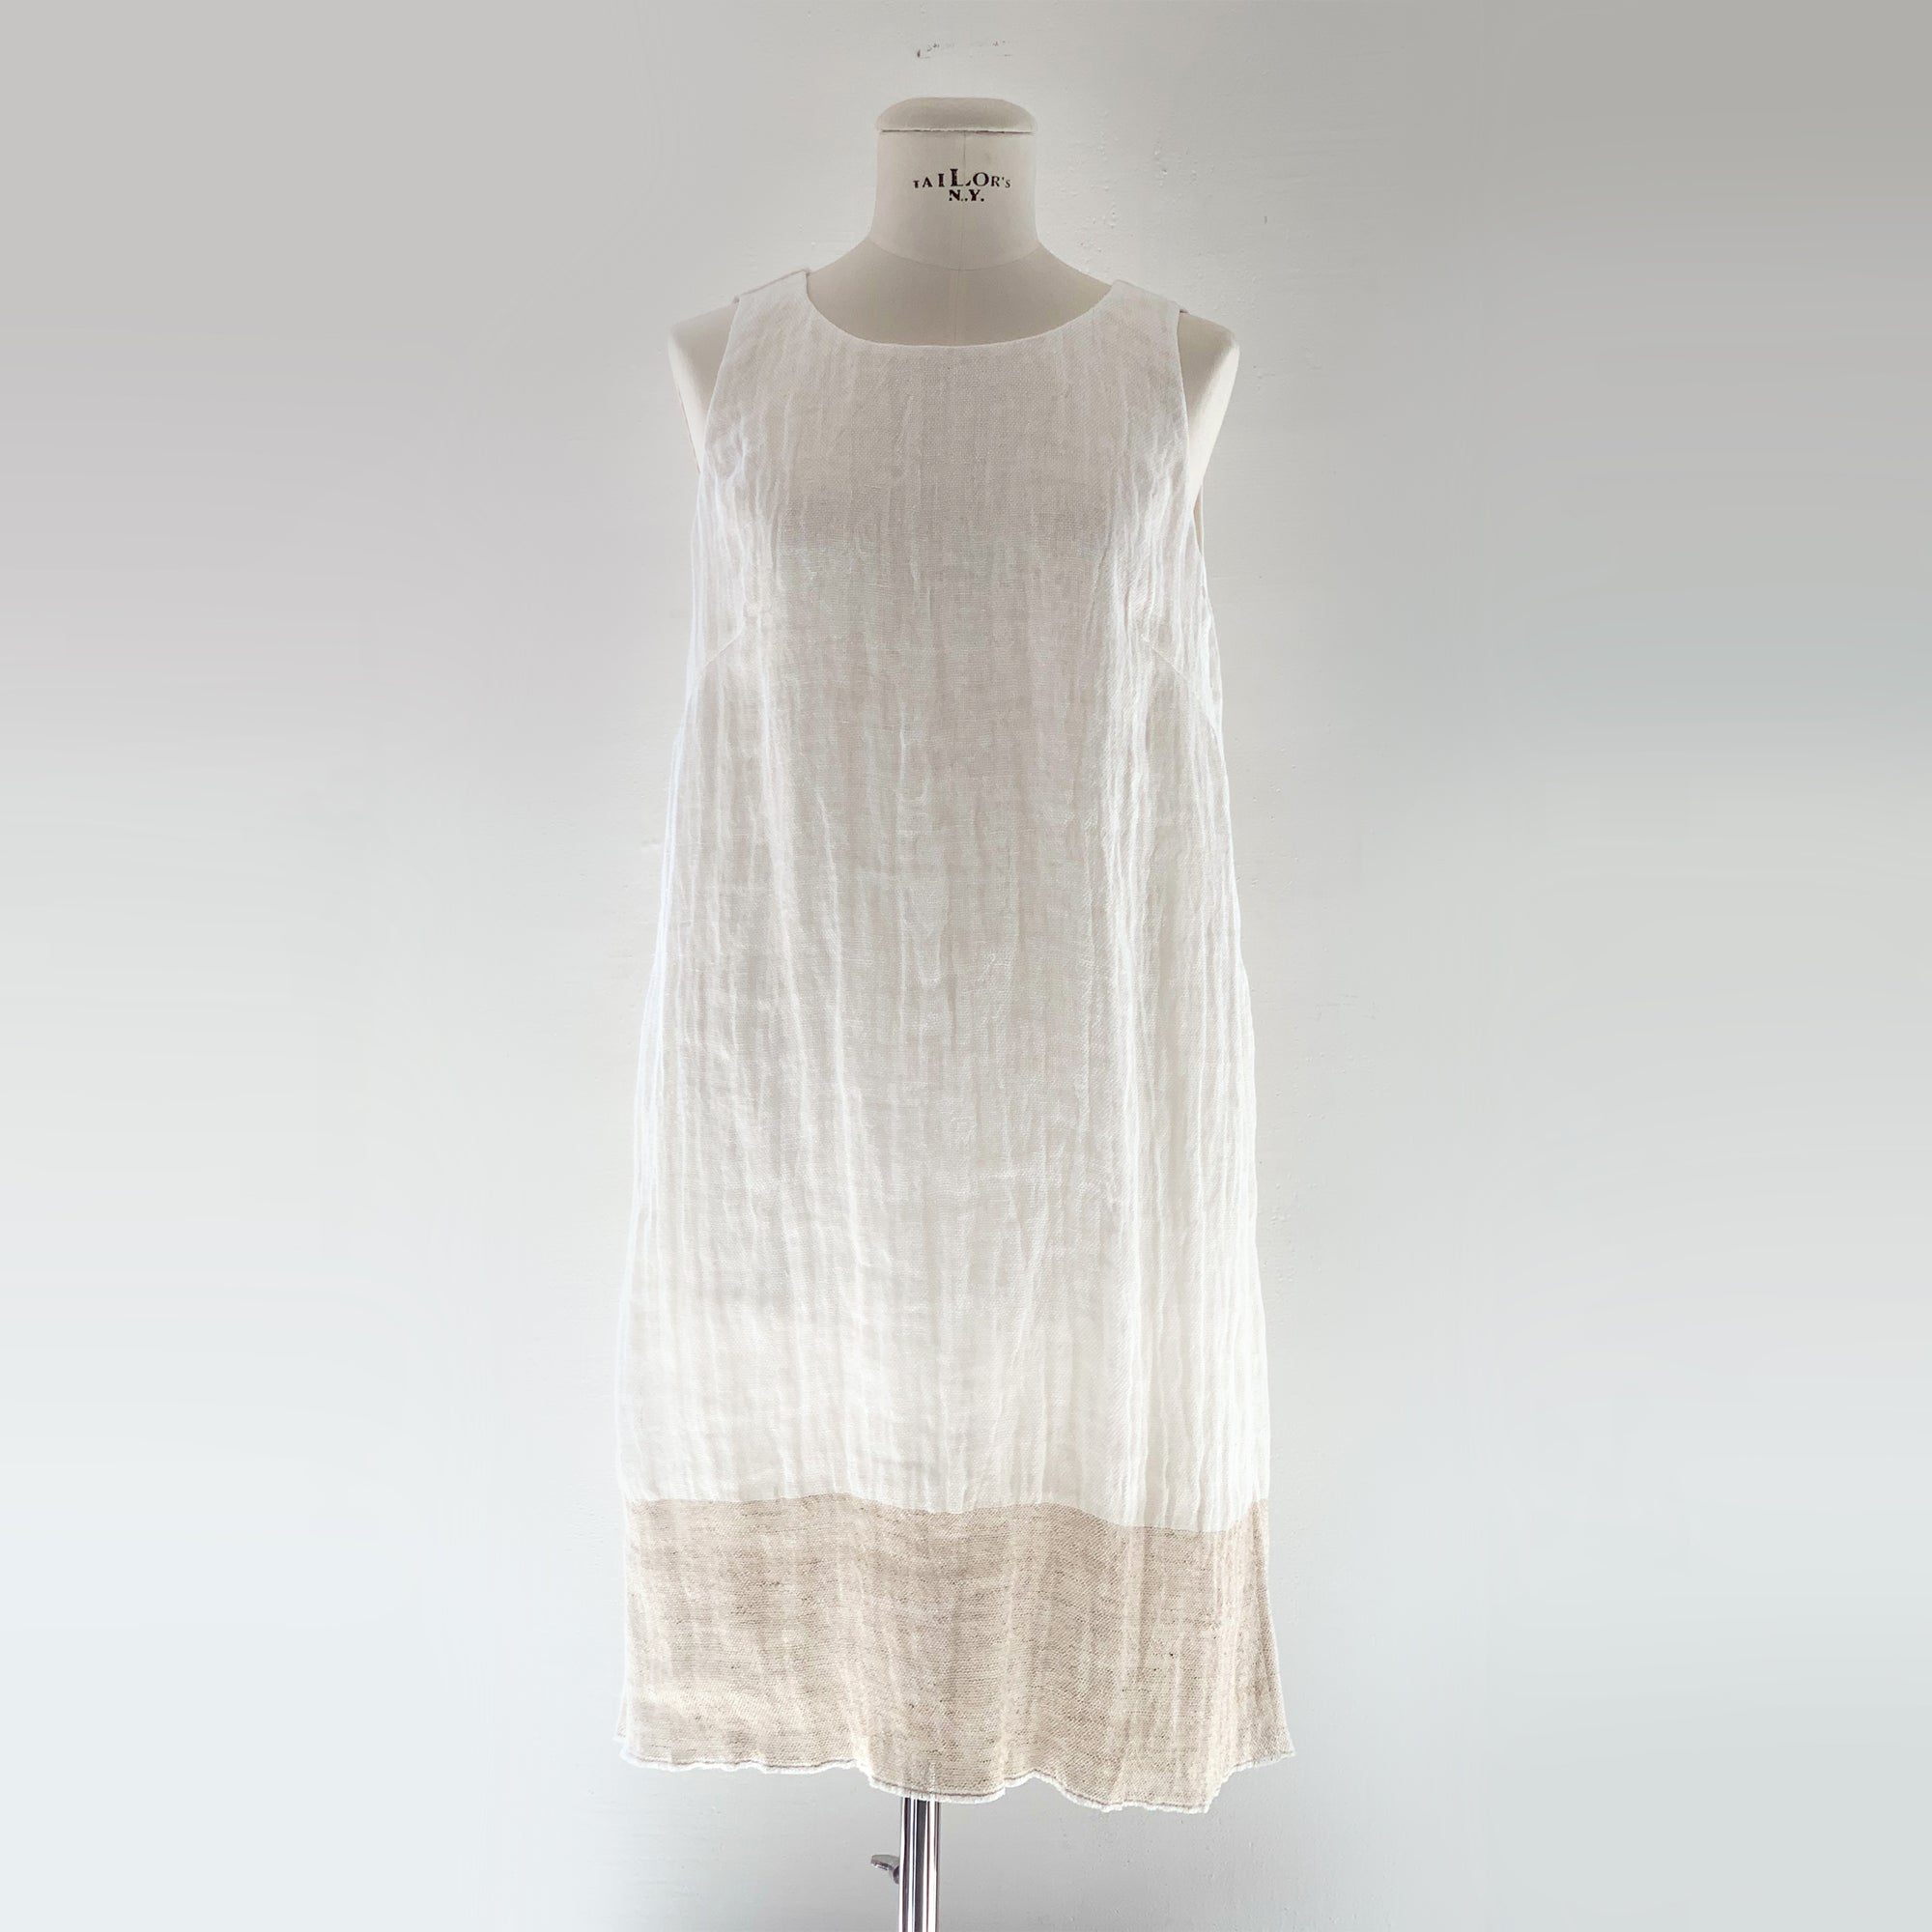 Linen Summer Dress "Jura" in white